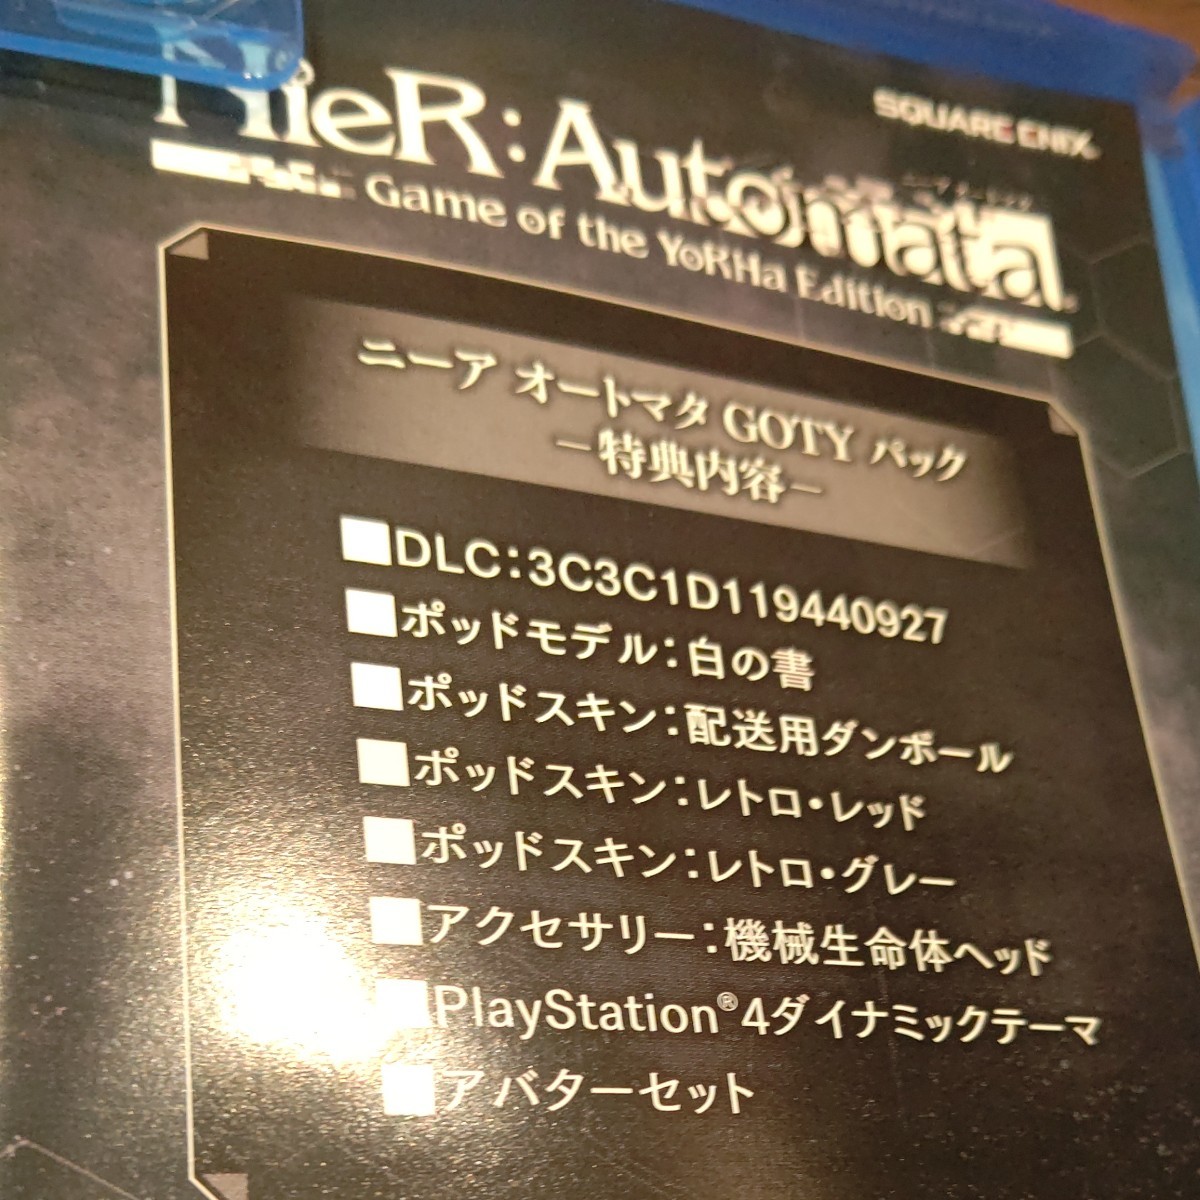 特典コード未使用 ニーアオートマタ ゲームオブザヨルハエディション PS4 NieR:Automata GOTY